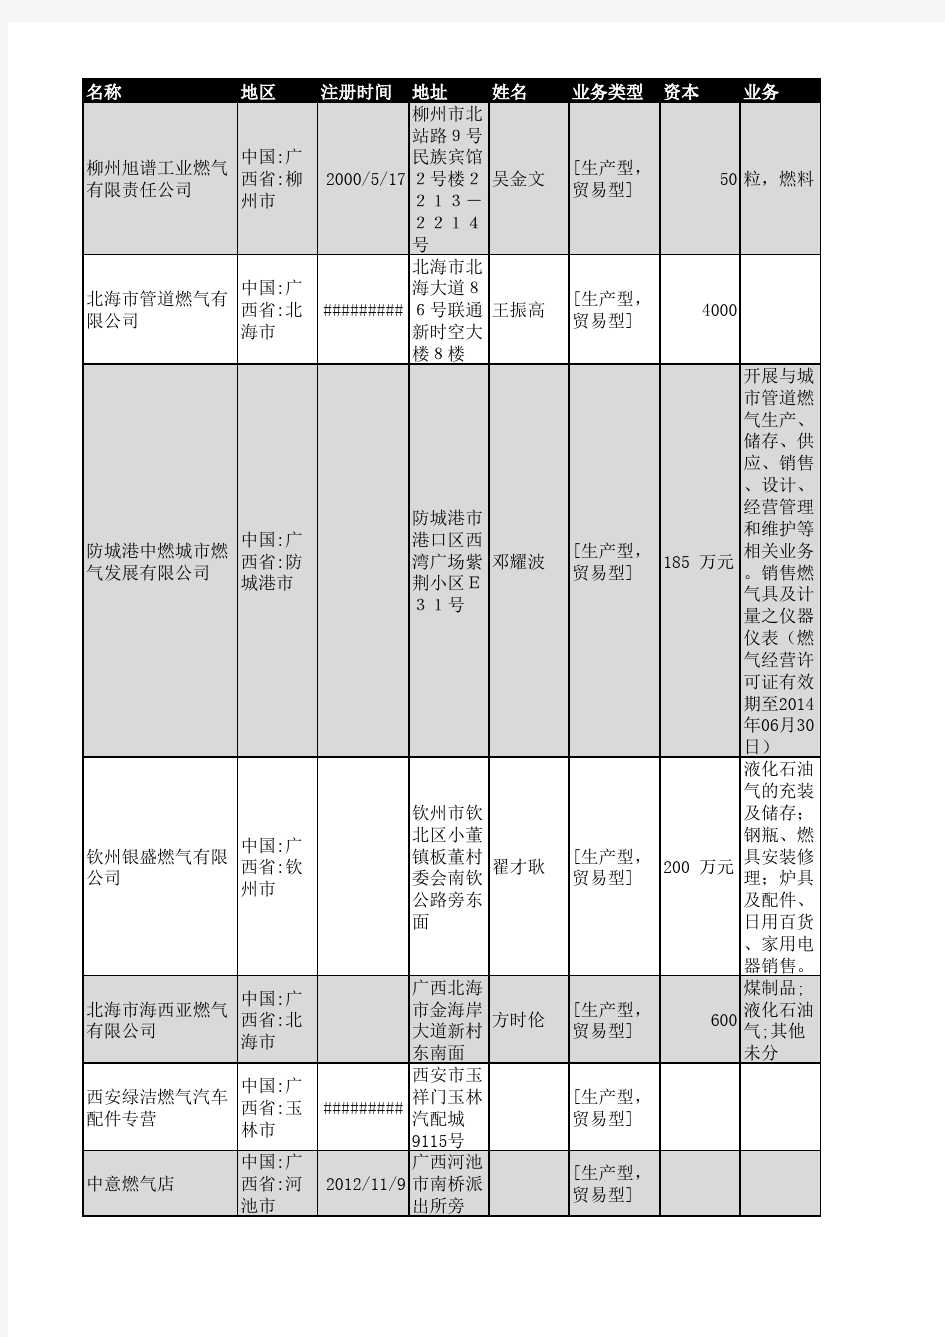 2019年广西省燃气行业企业名录135家